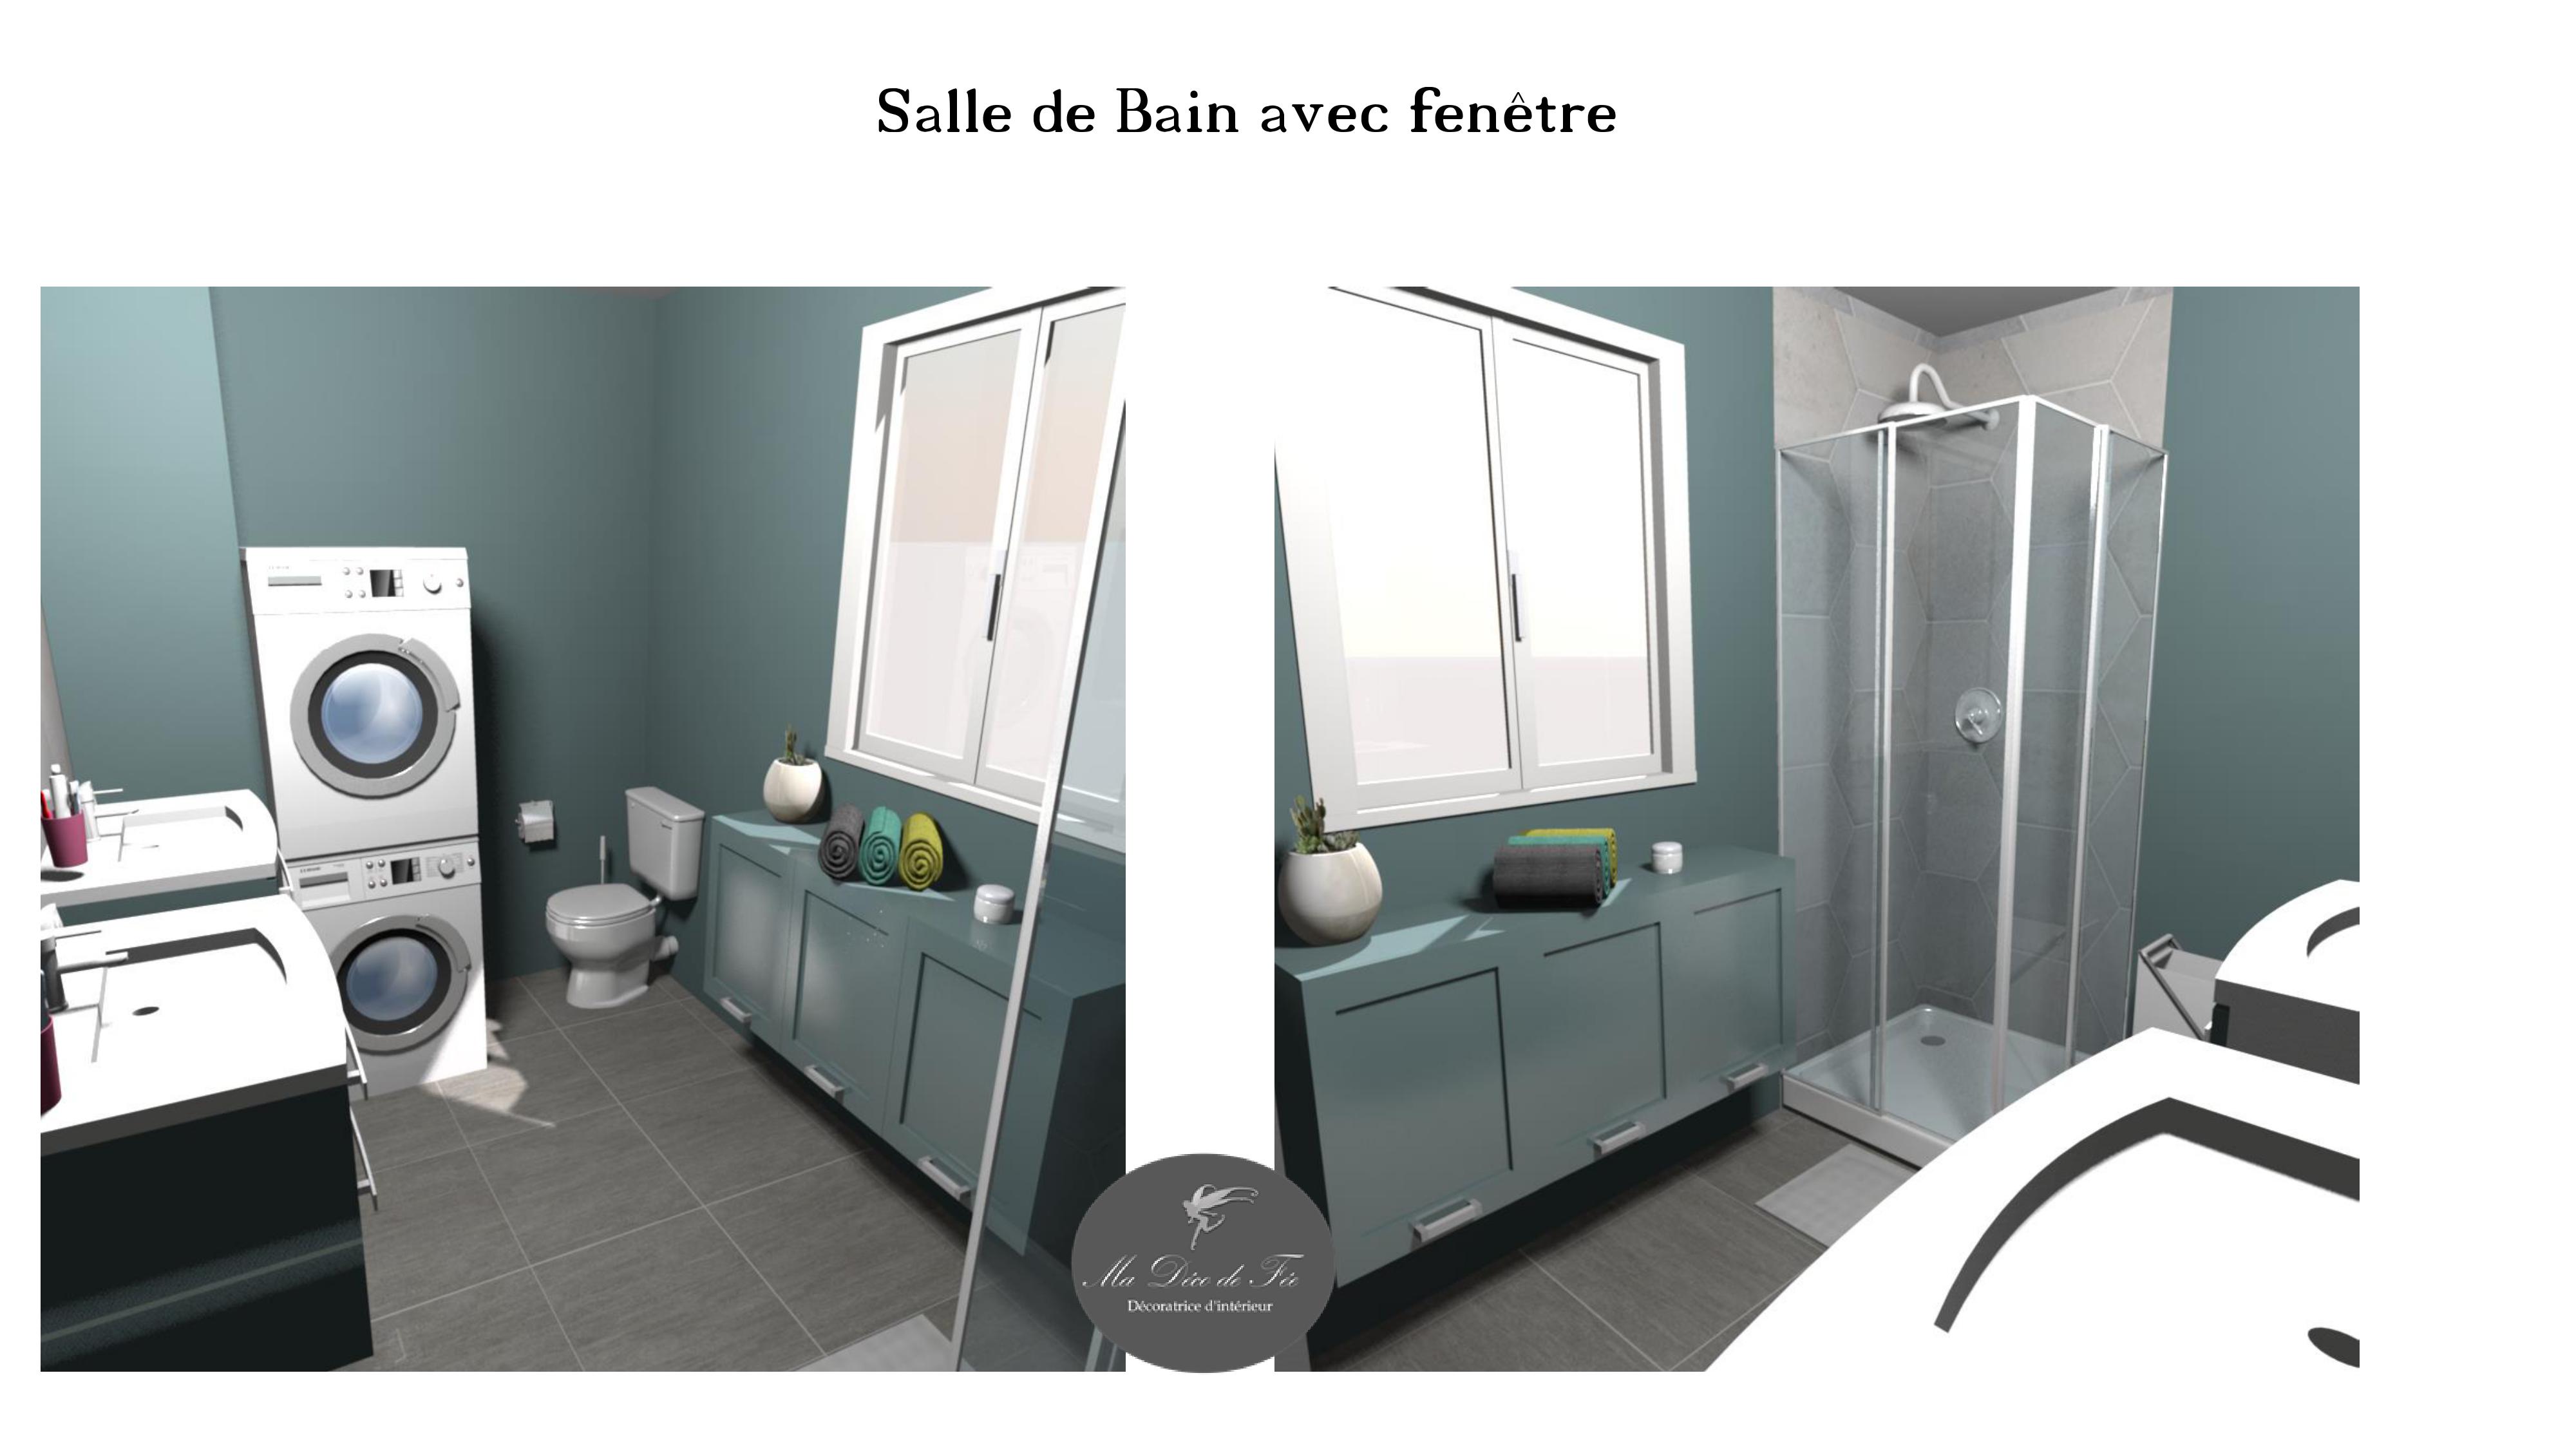 Décoration Séjour/cuisine/chambres/salle de bain- Douai